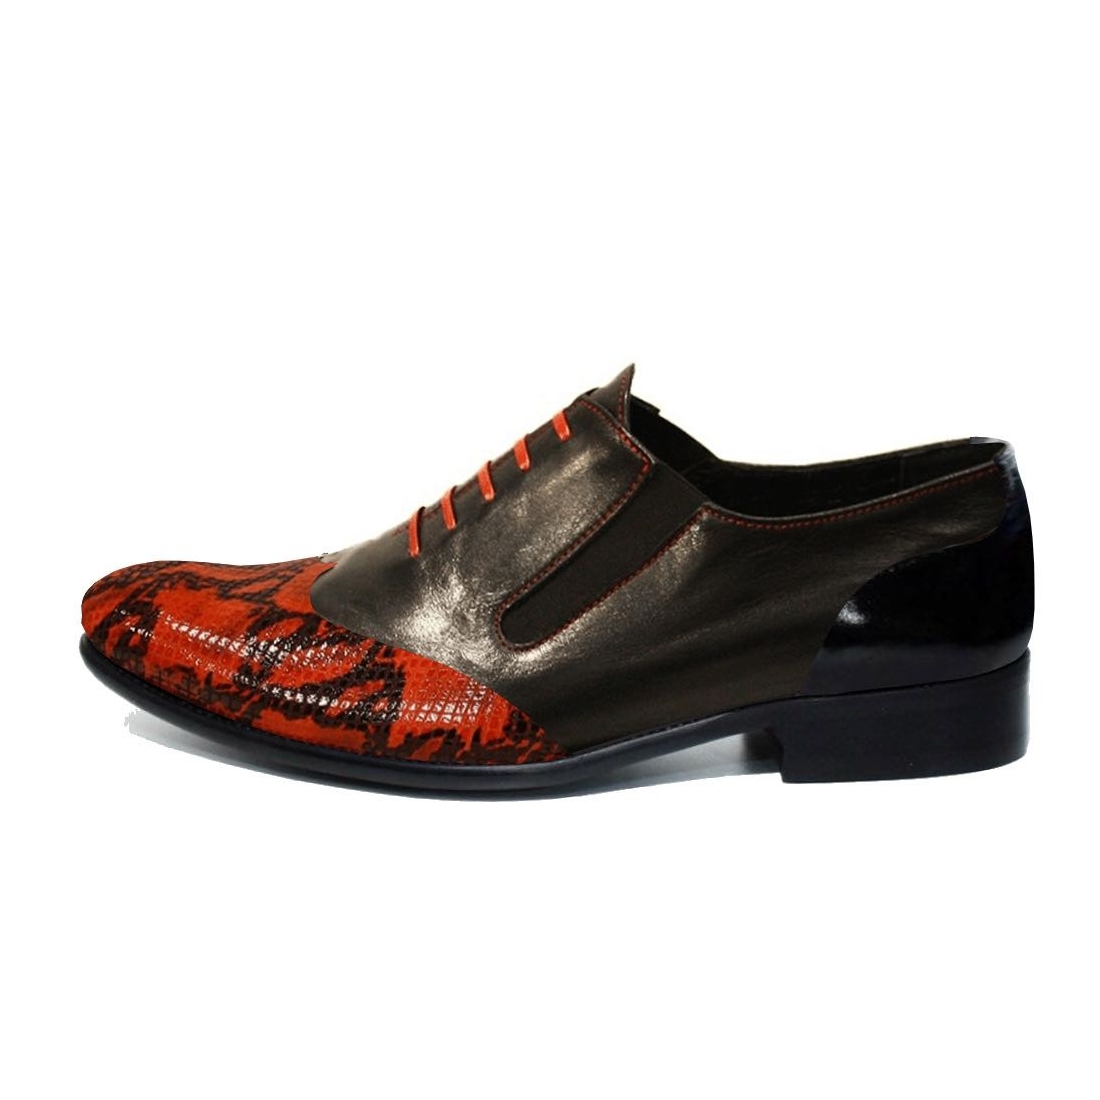 Modello Leterro - Zapatillas Sin Cordones - Handmade Colorful Italian Leather Shoes